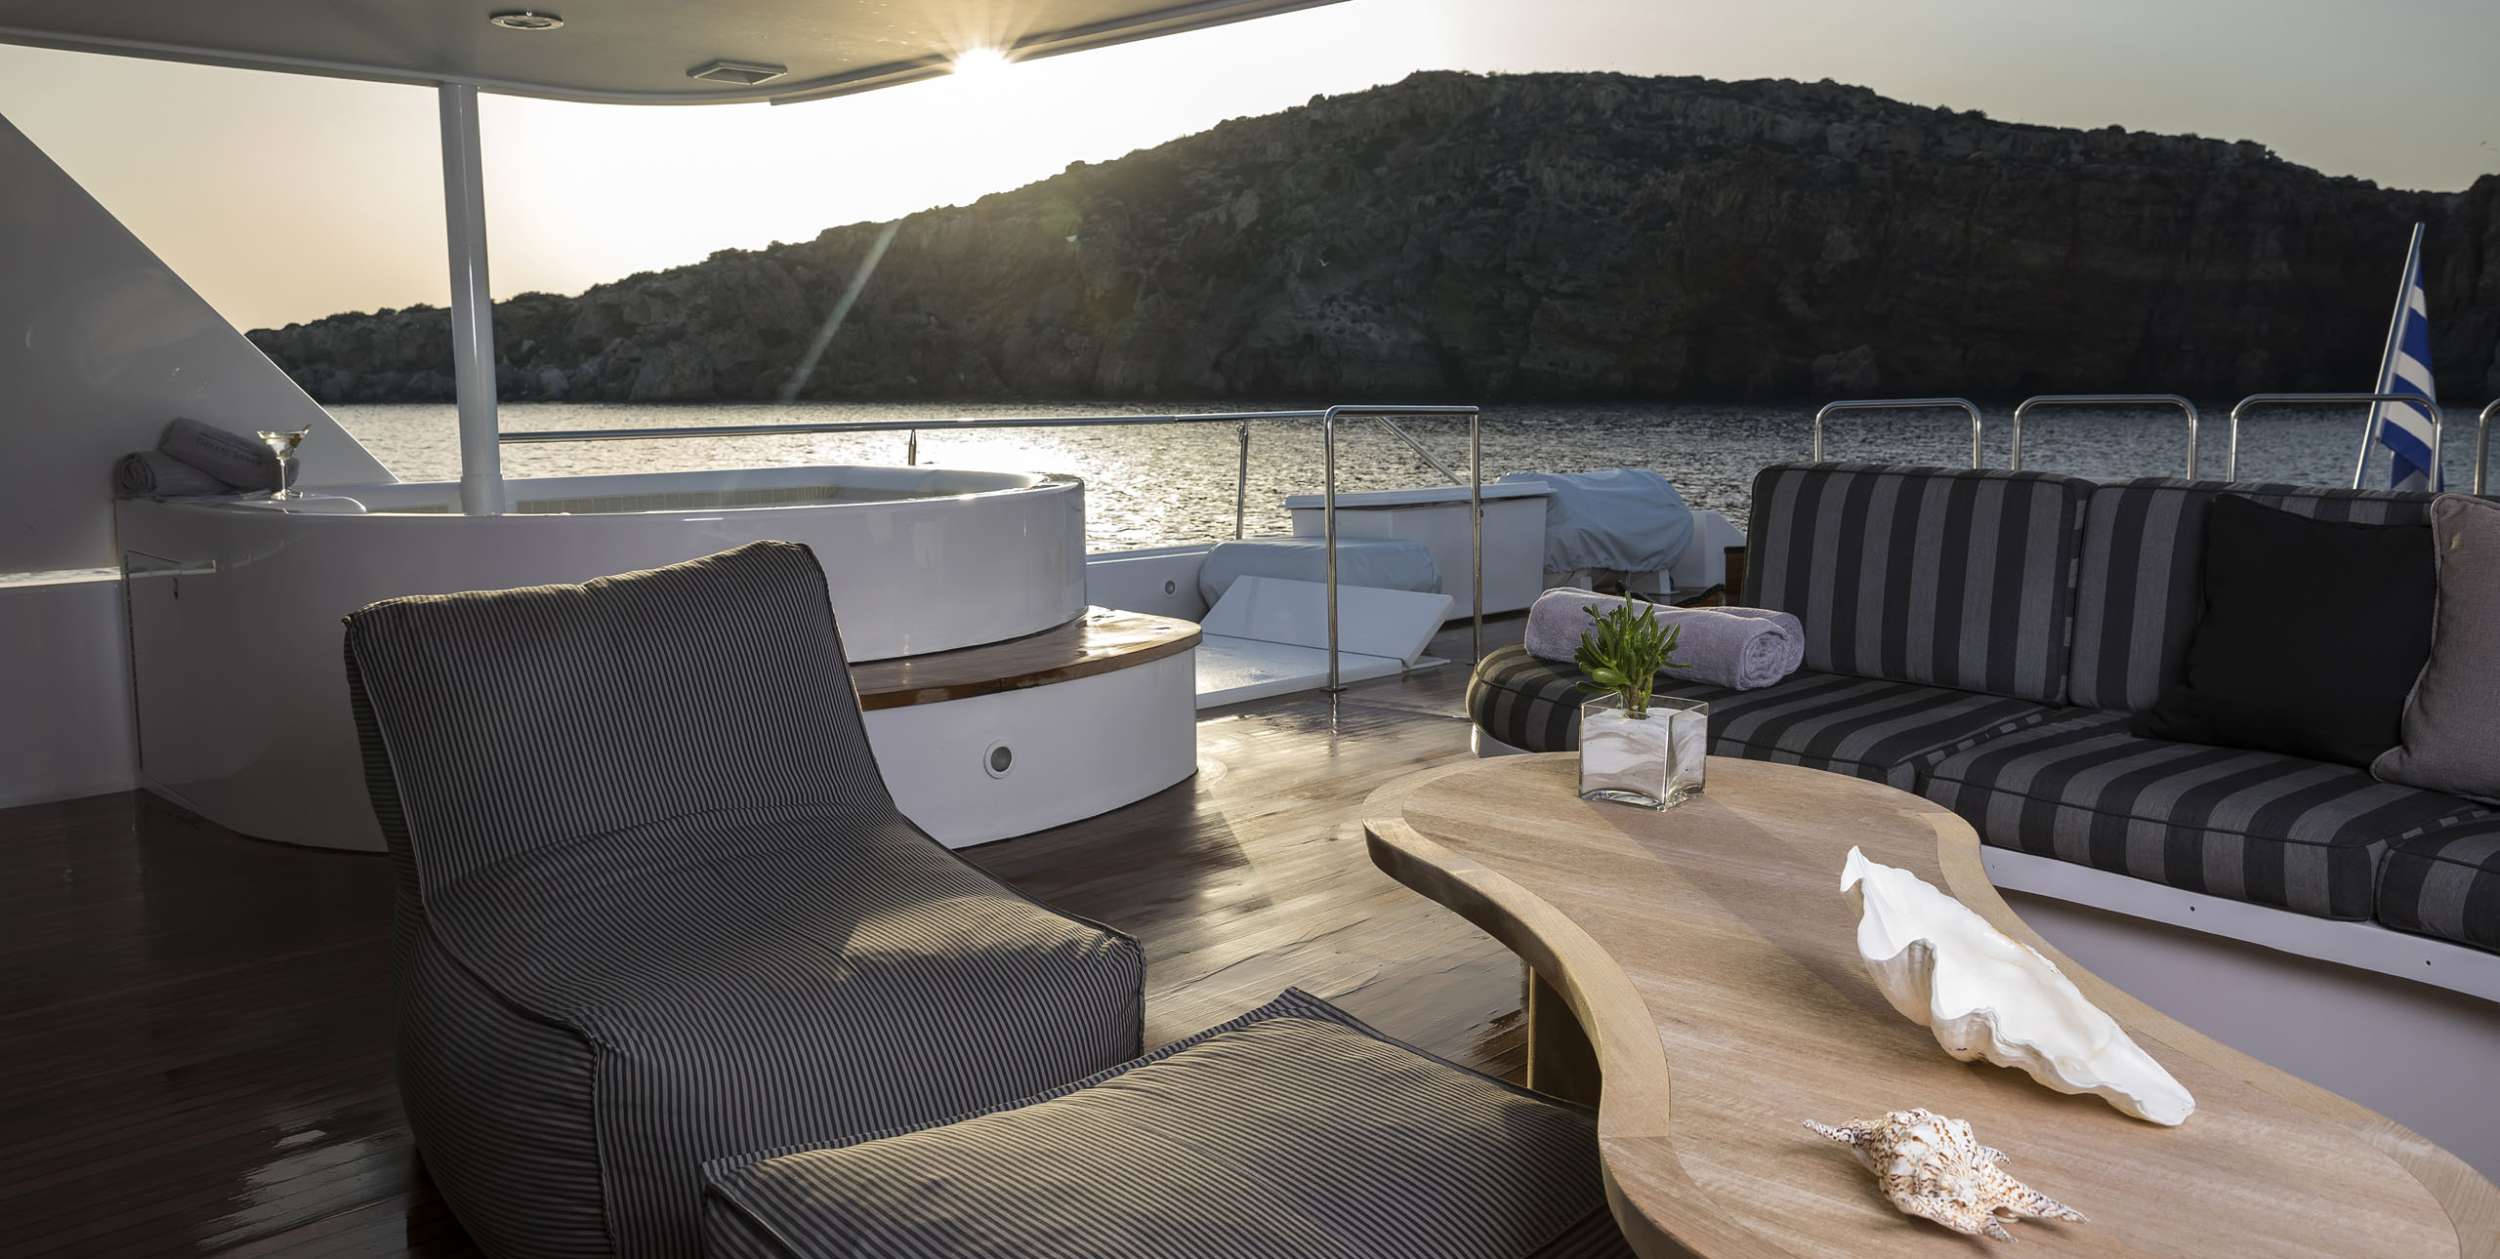 ENDLESS SUMMER Yacht Charter - Upper Deck Lounge Area